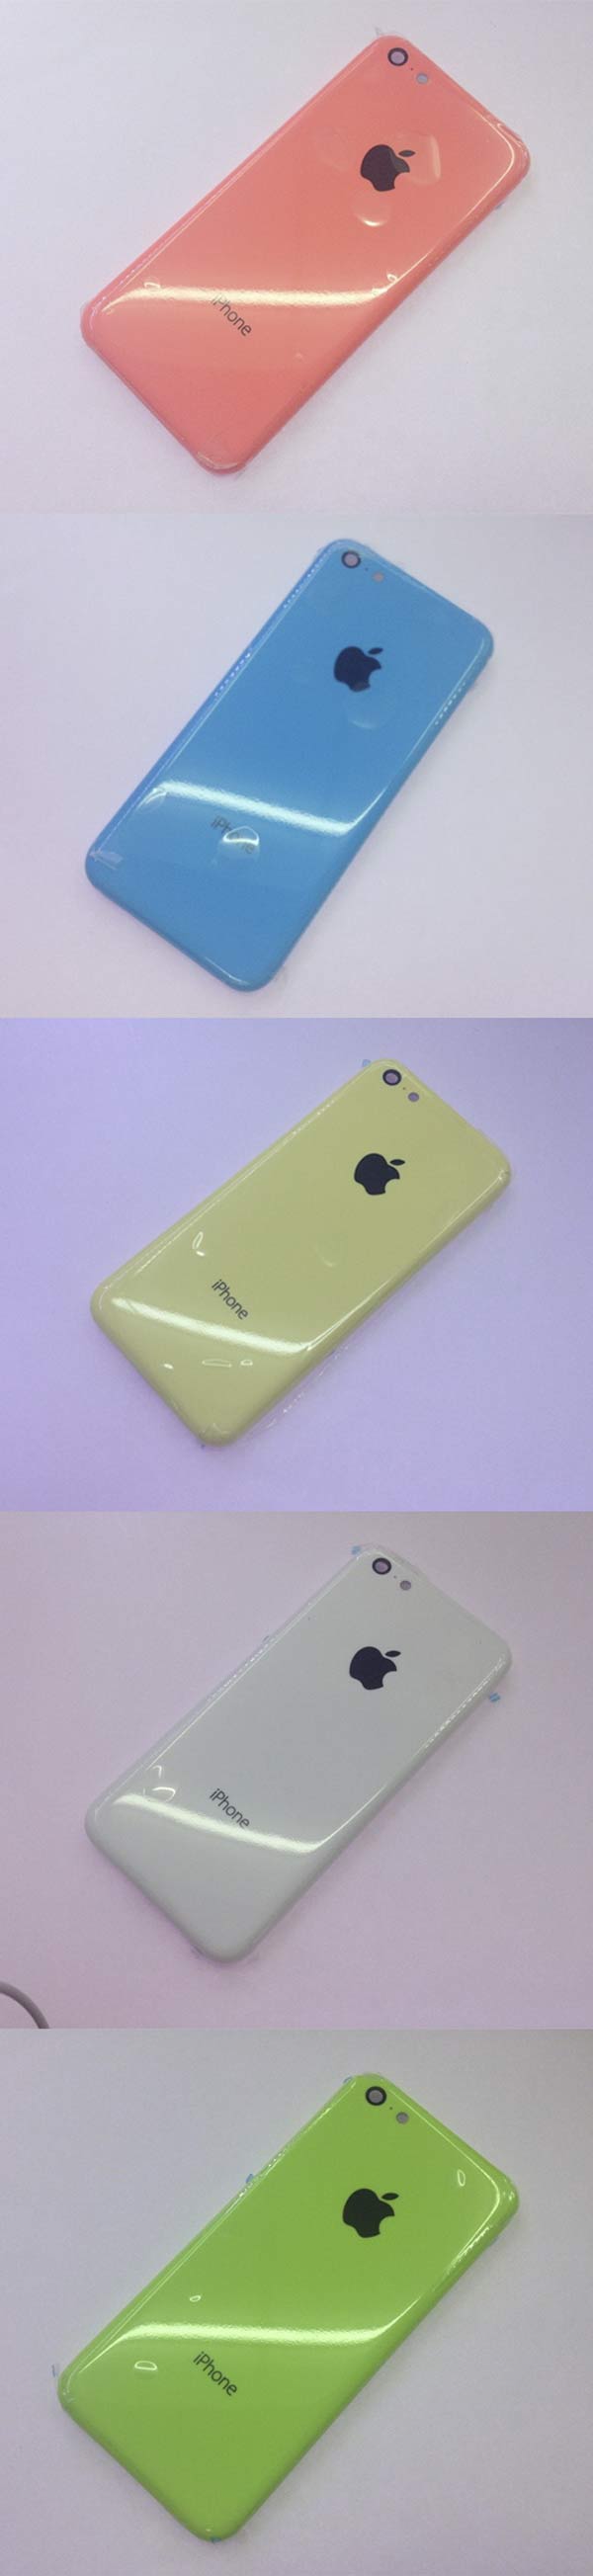 Se filtran fotos de las cinco carcasas disponibles del iPhone 5C